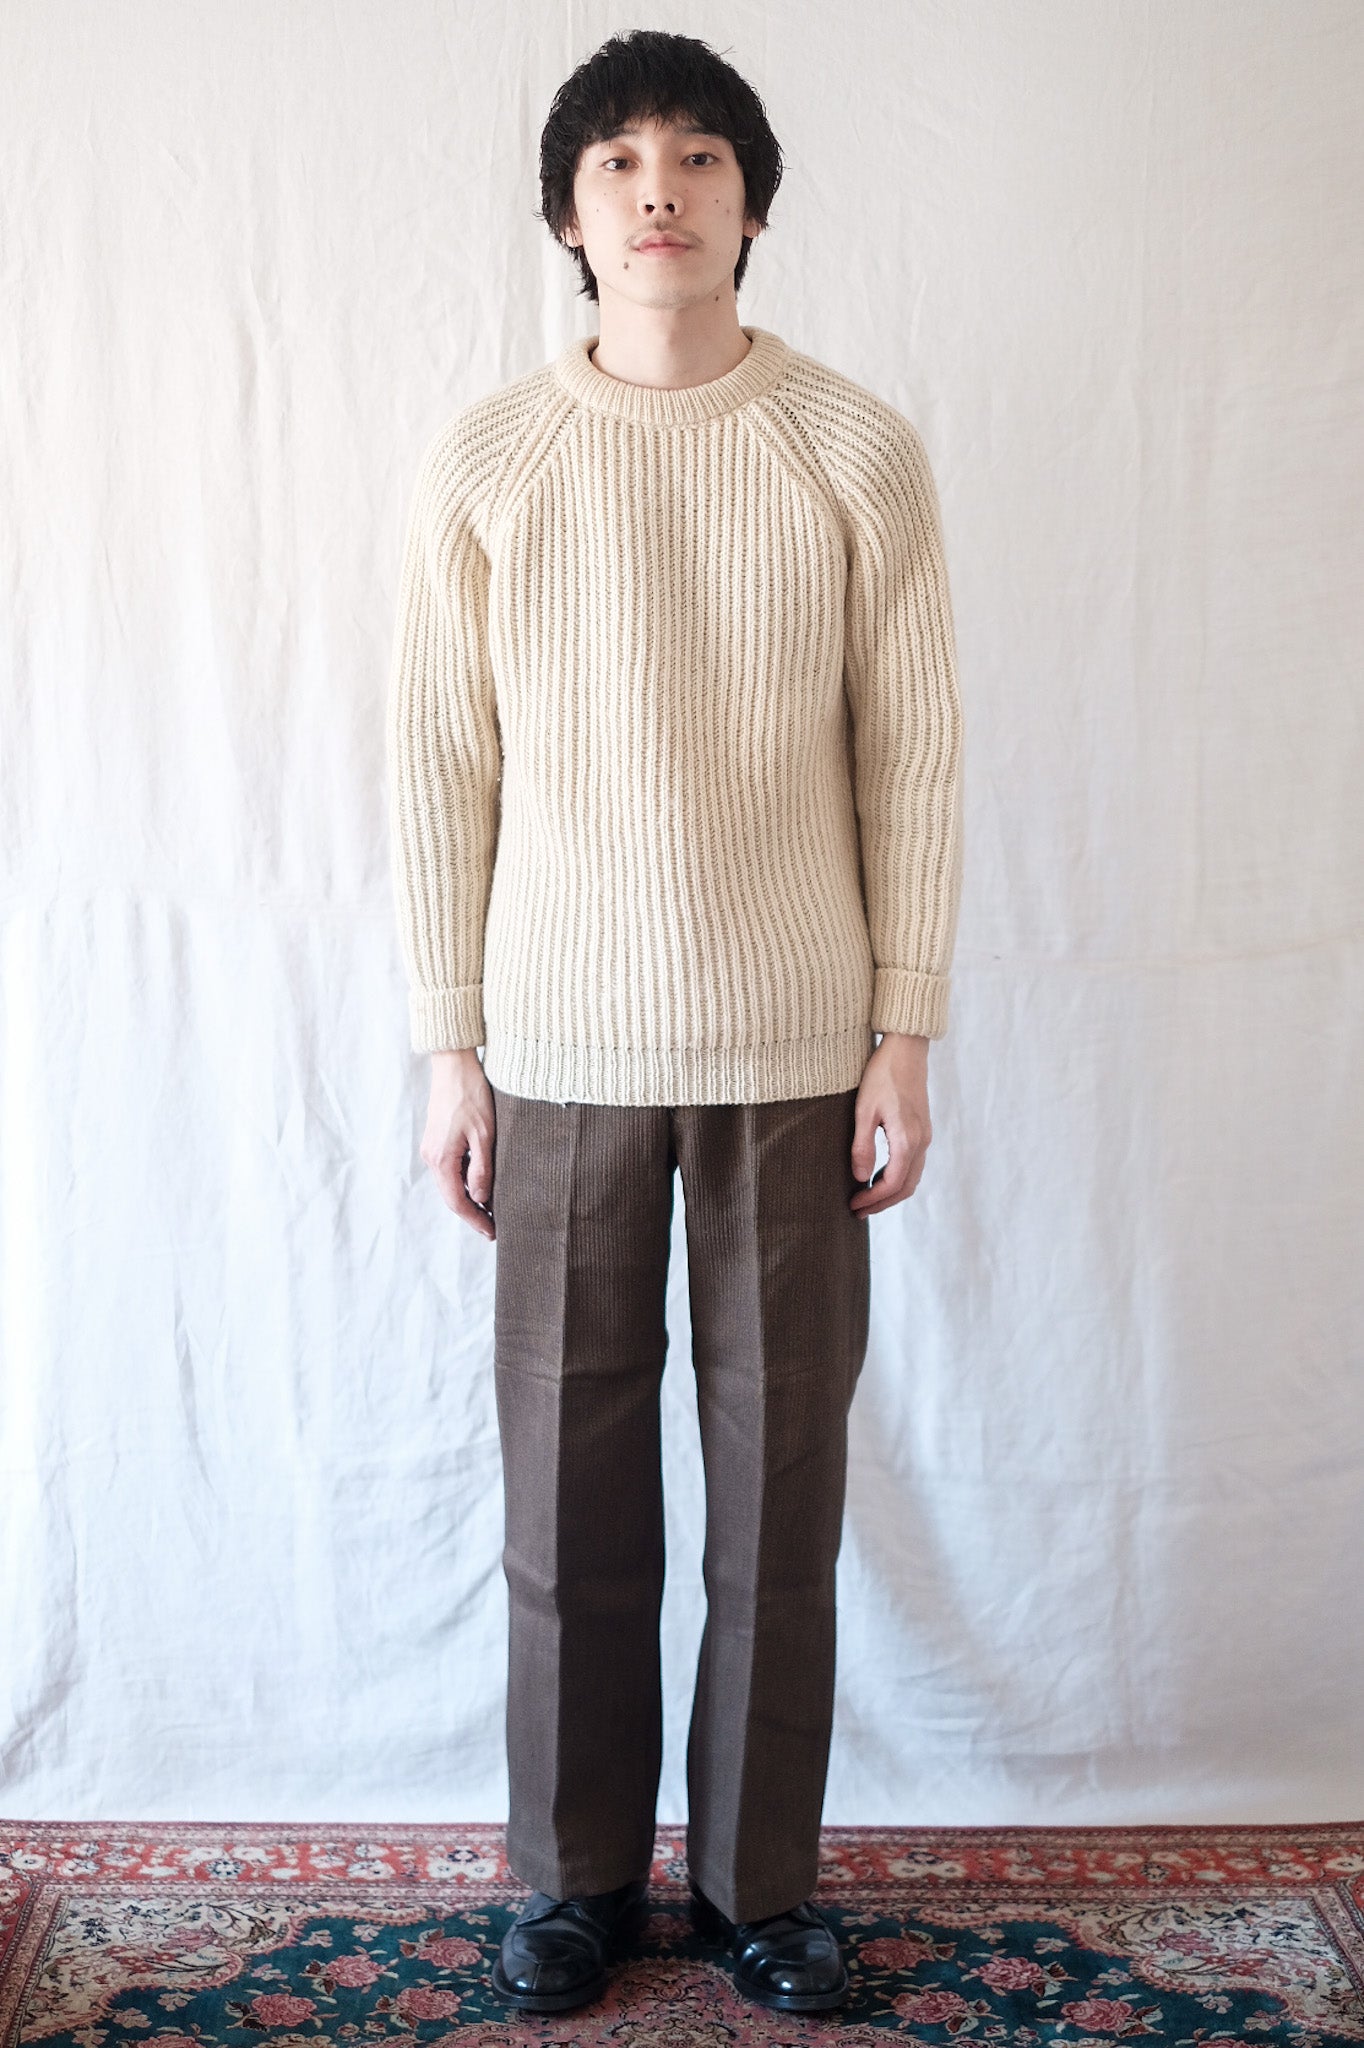 [〜50年代]法國復古棕色棉布式工程褲子“死庫存”